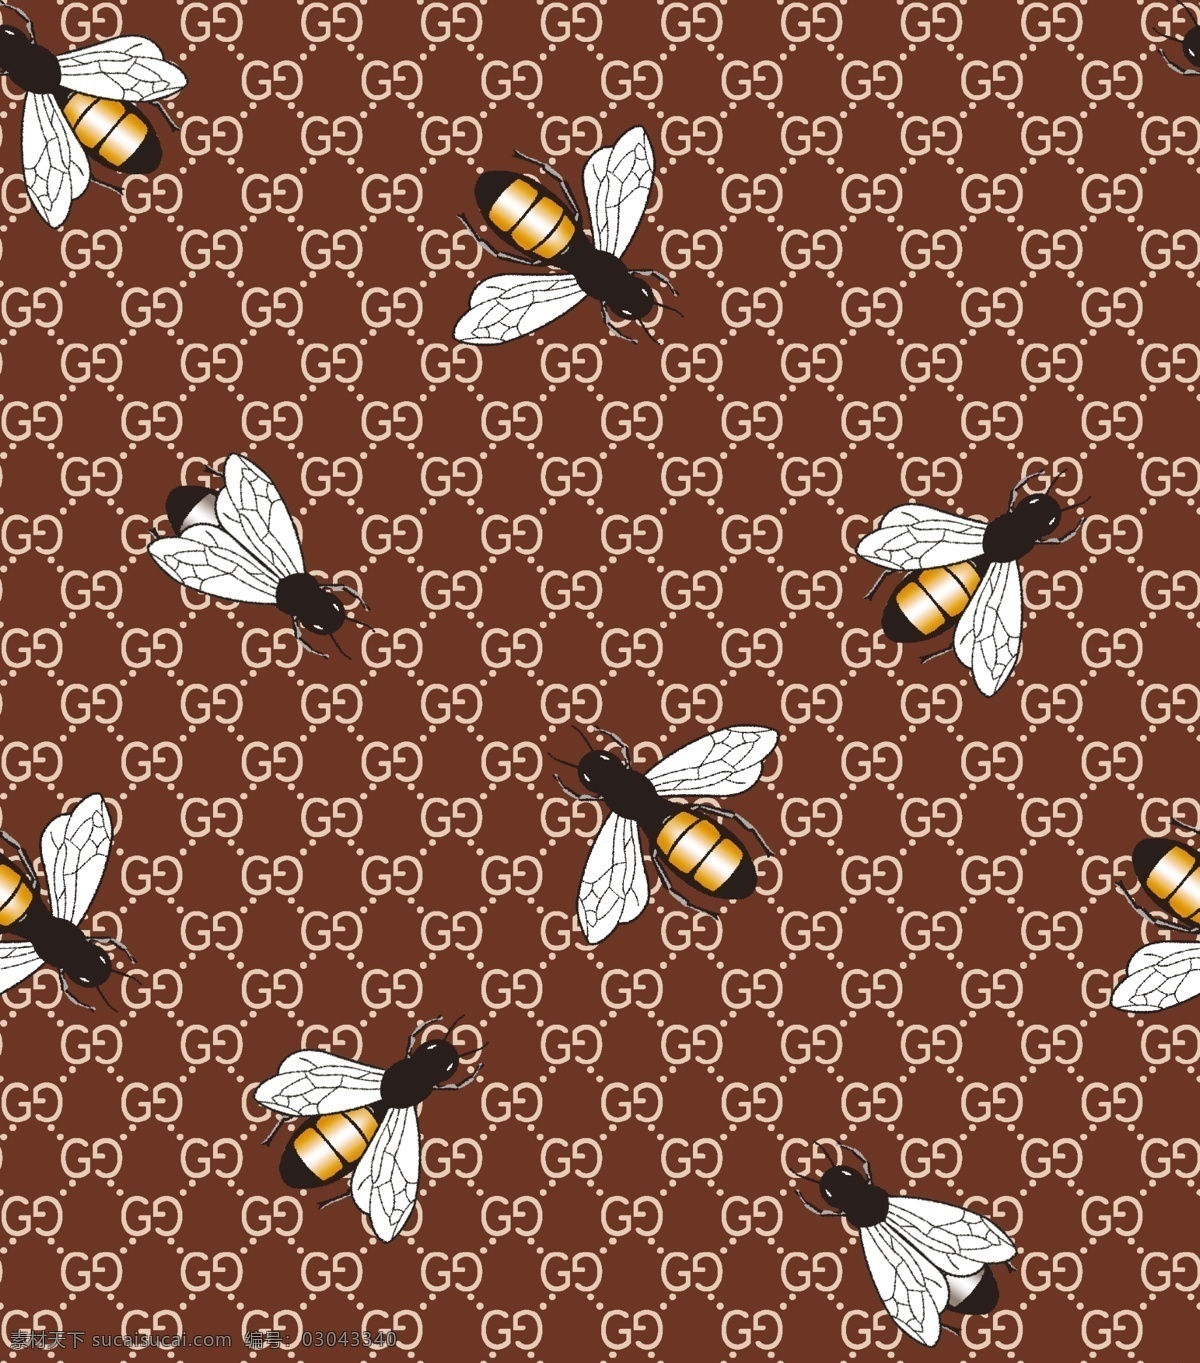 大牌蜜蜂图片 大牌 蜜蜂 数码 印花 服装设计